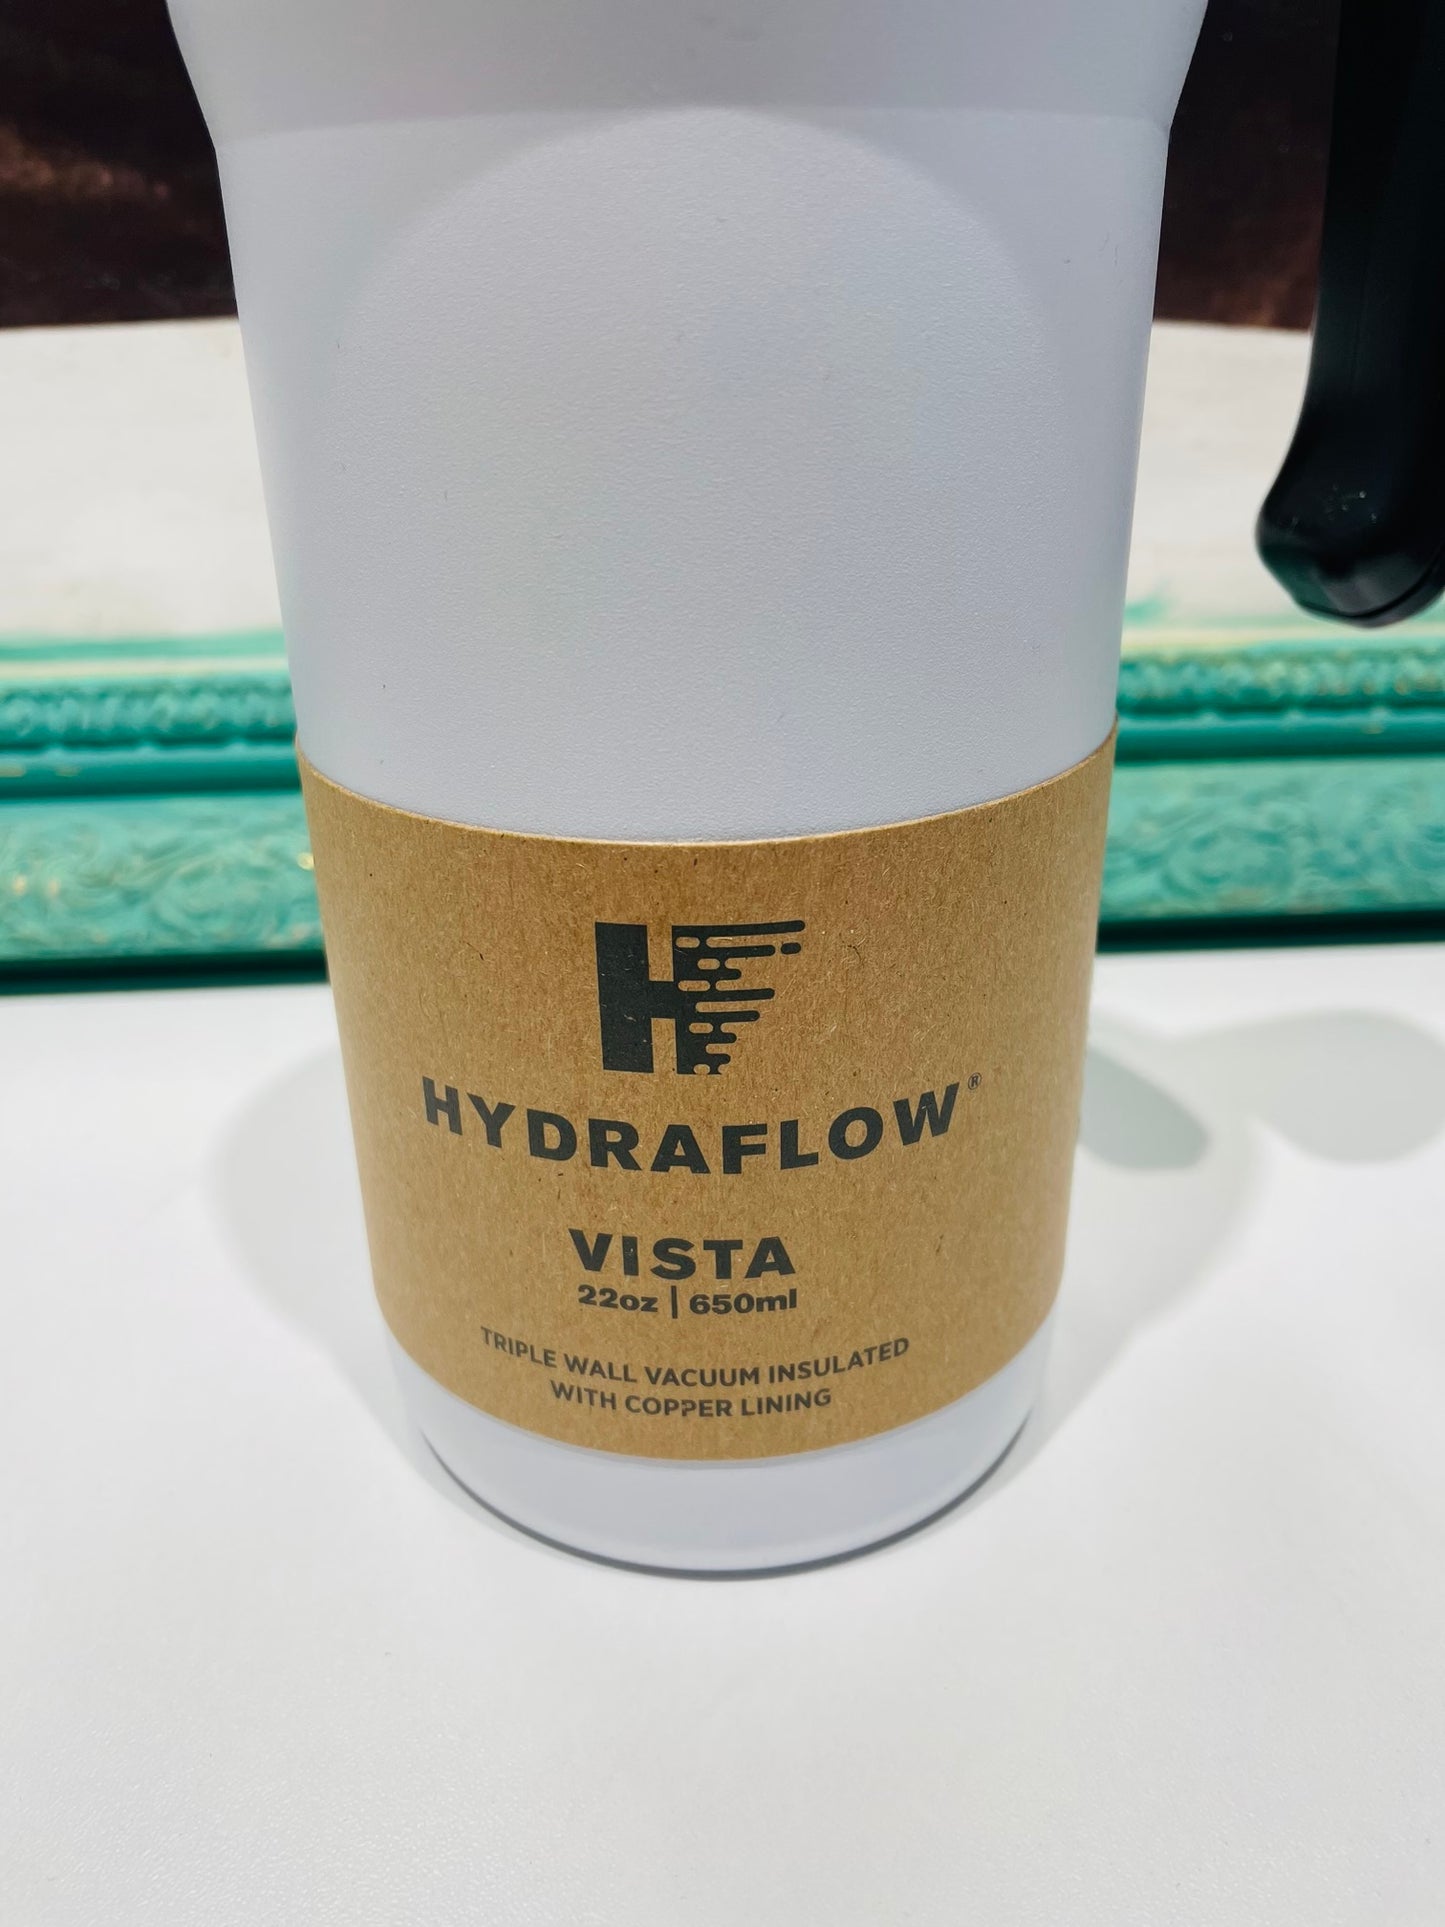 Hydraflow vista bottle